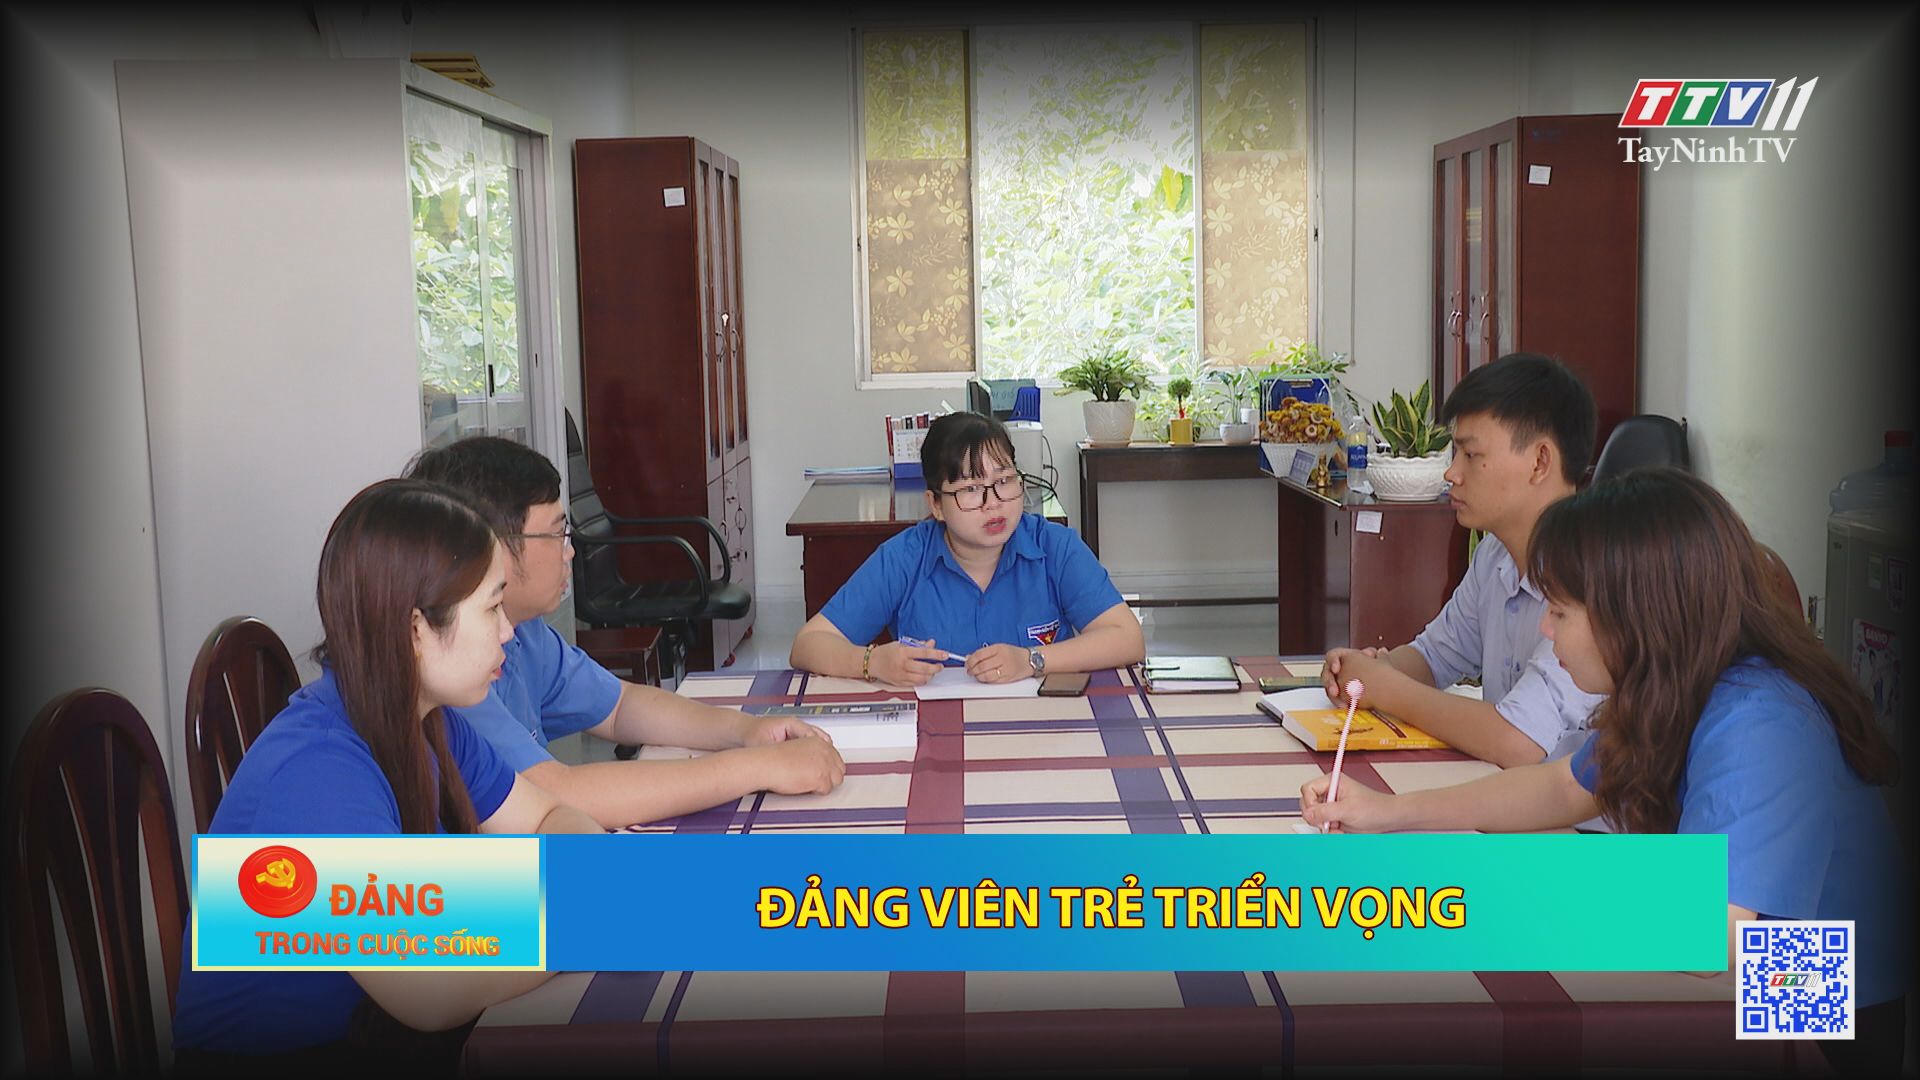 Đảng viên trẻ triển vọng | ĐẢNG TRONG CUỘC SỐNG | TayNinhTV